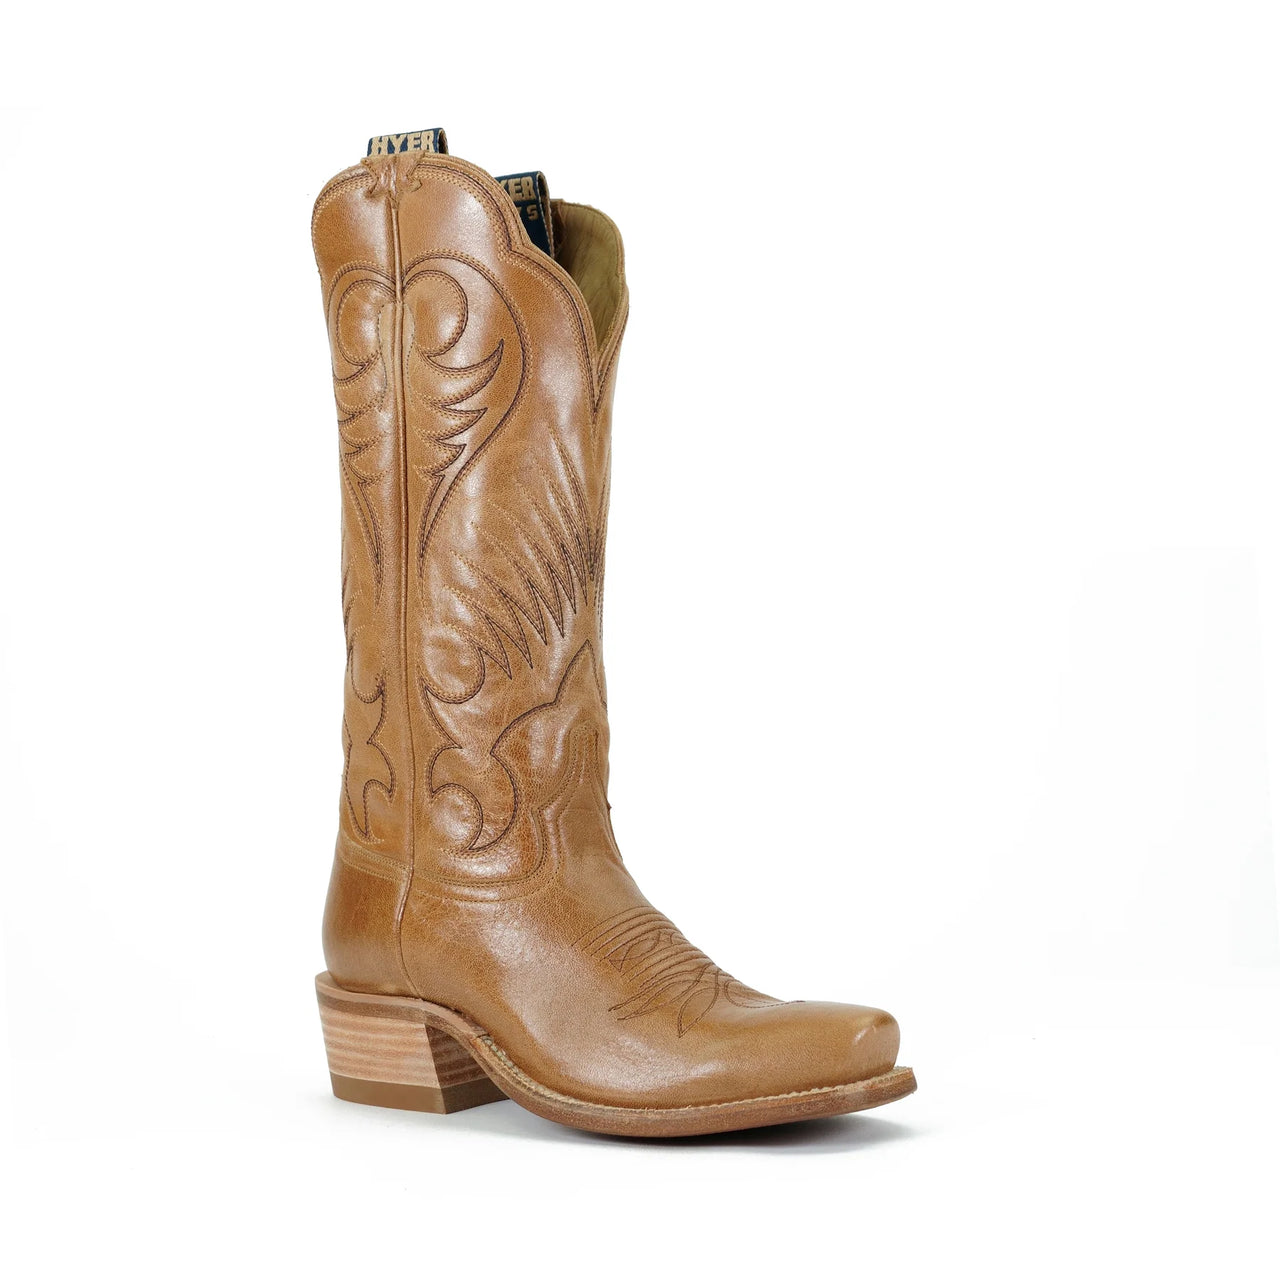 Hyer Women's Leawood Western Boots - Honey Mestizo